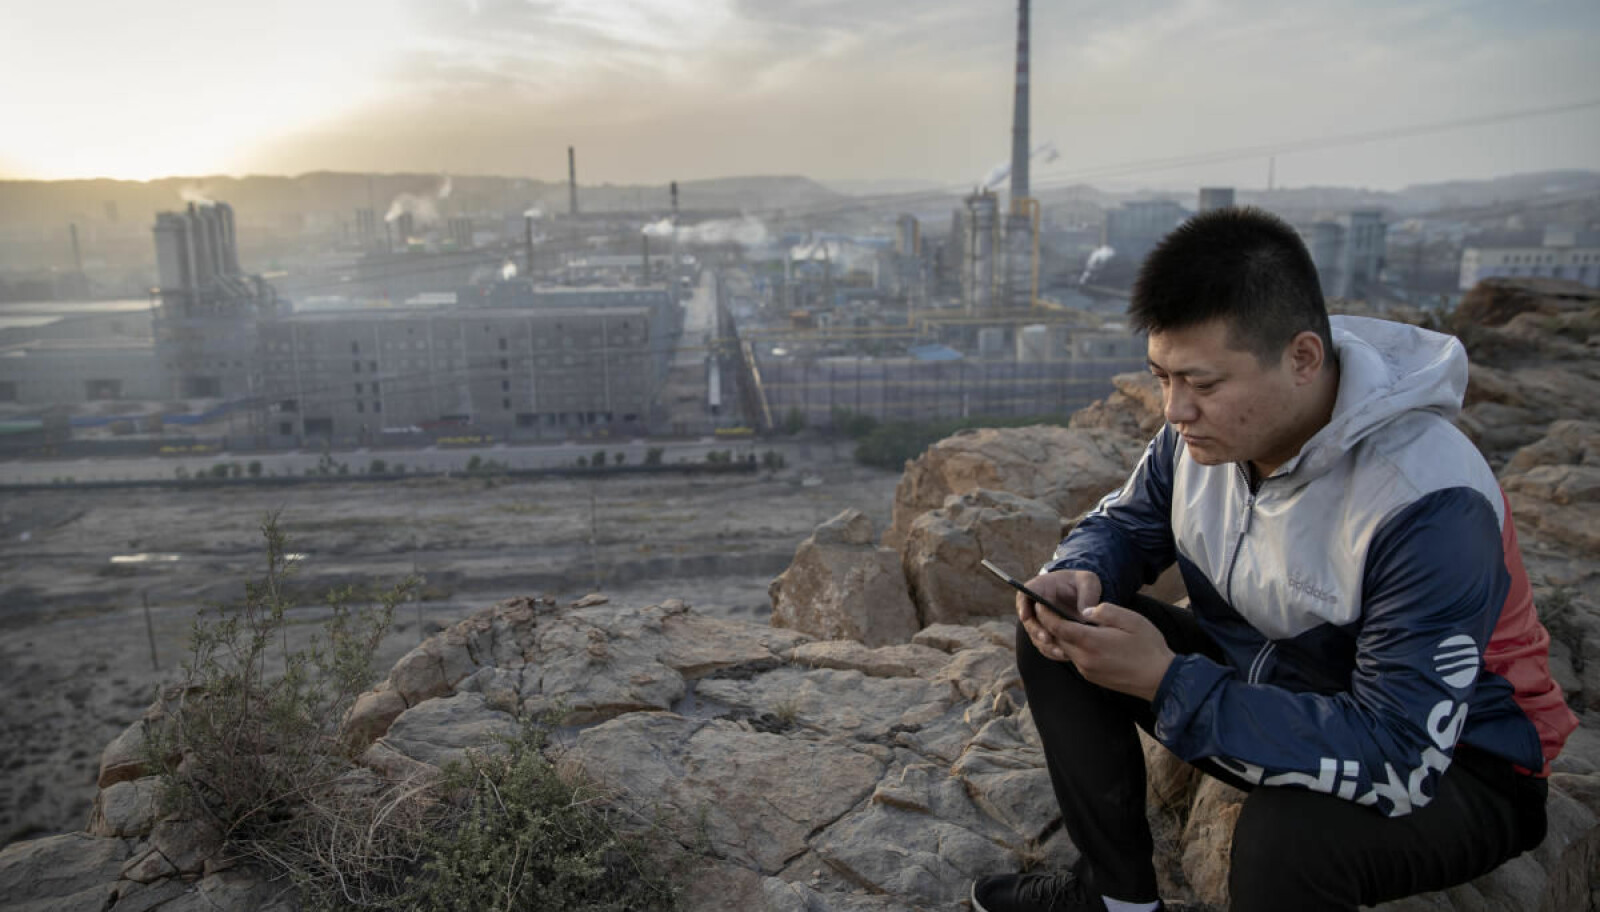 Tåkelagt barndom: Li har klatret opp på en liten åskam rett utenfor byen han har vokst opp i. – Alle kinesere har mobiltelefon nå. En moderne livsstil krever strøm.